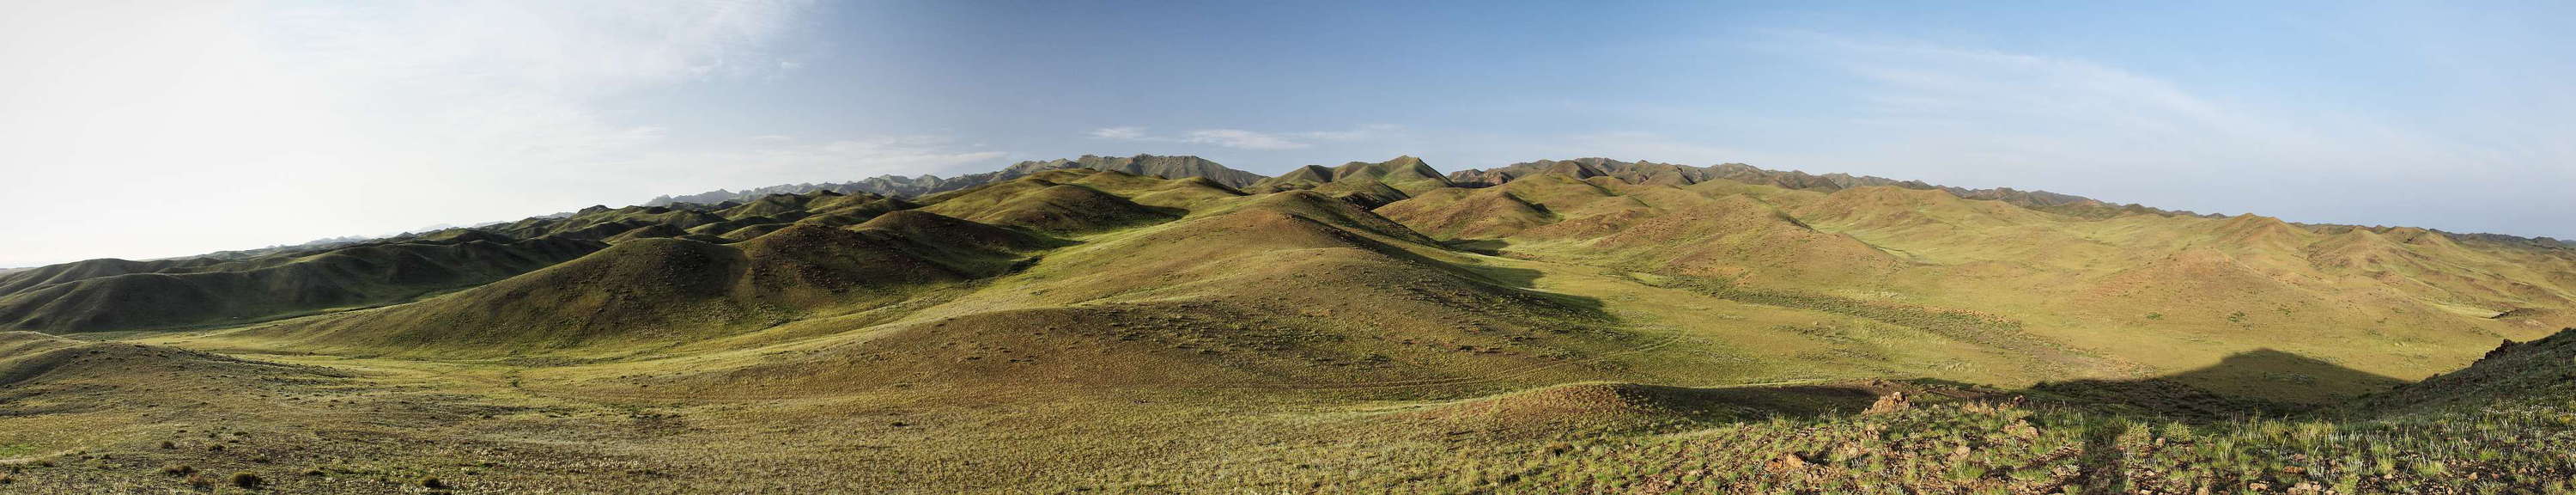 Gurvan Saykhan Mountains  |  Panorama